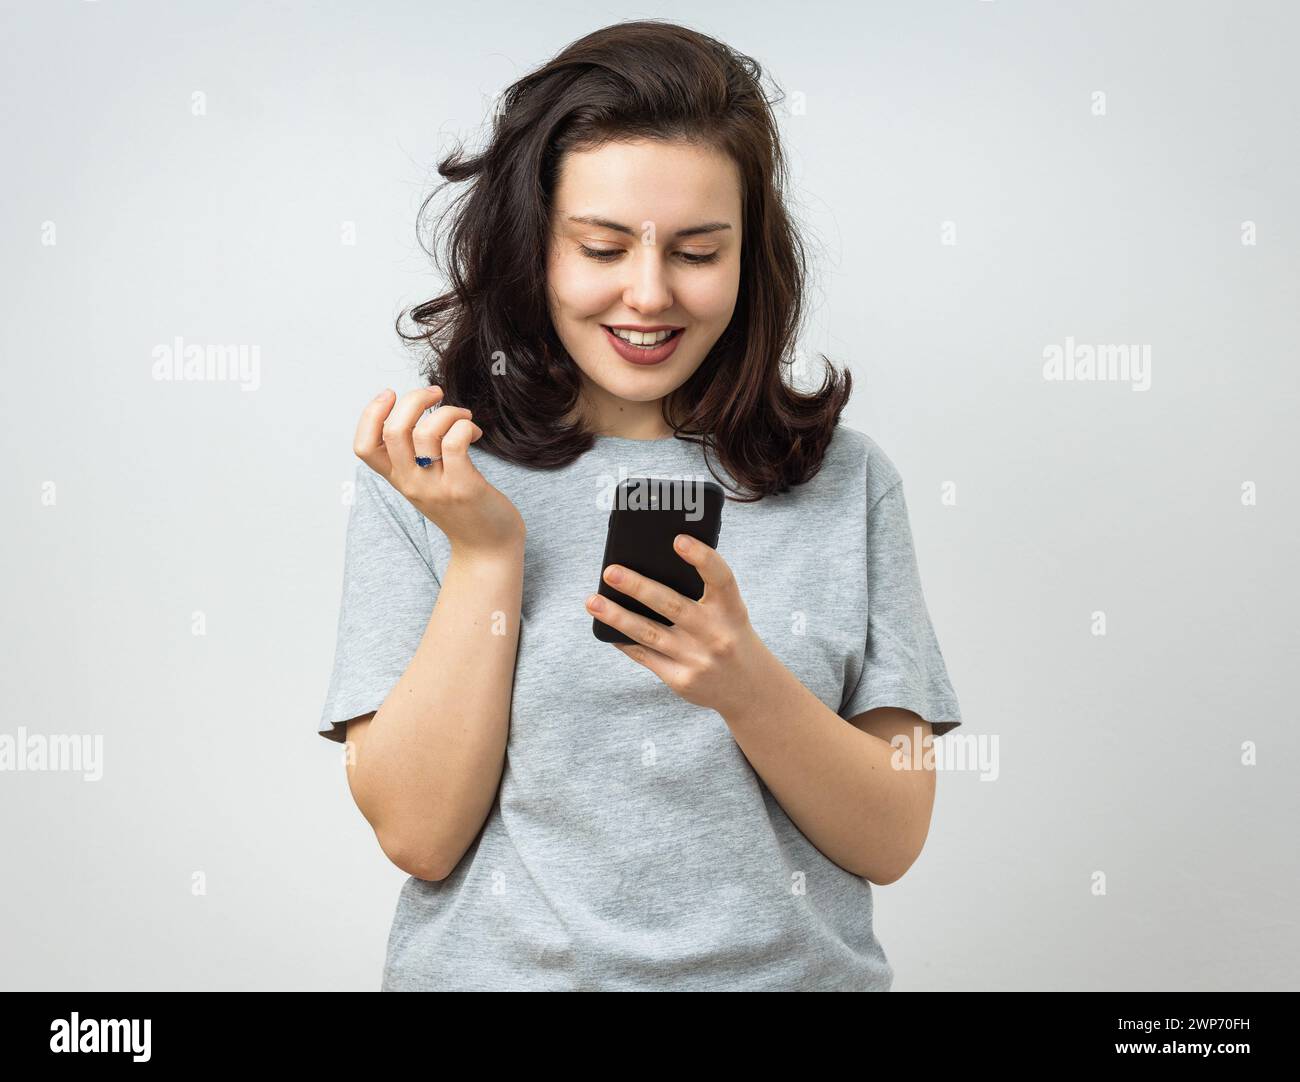 Attraktive junge Frau, die glücklich auf den Bildschirm ihres Smartphones blickt. Isoliert auf grauem Hintergrund Stockfoto